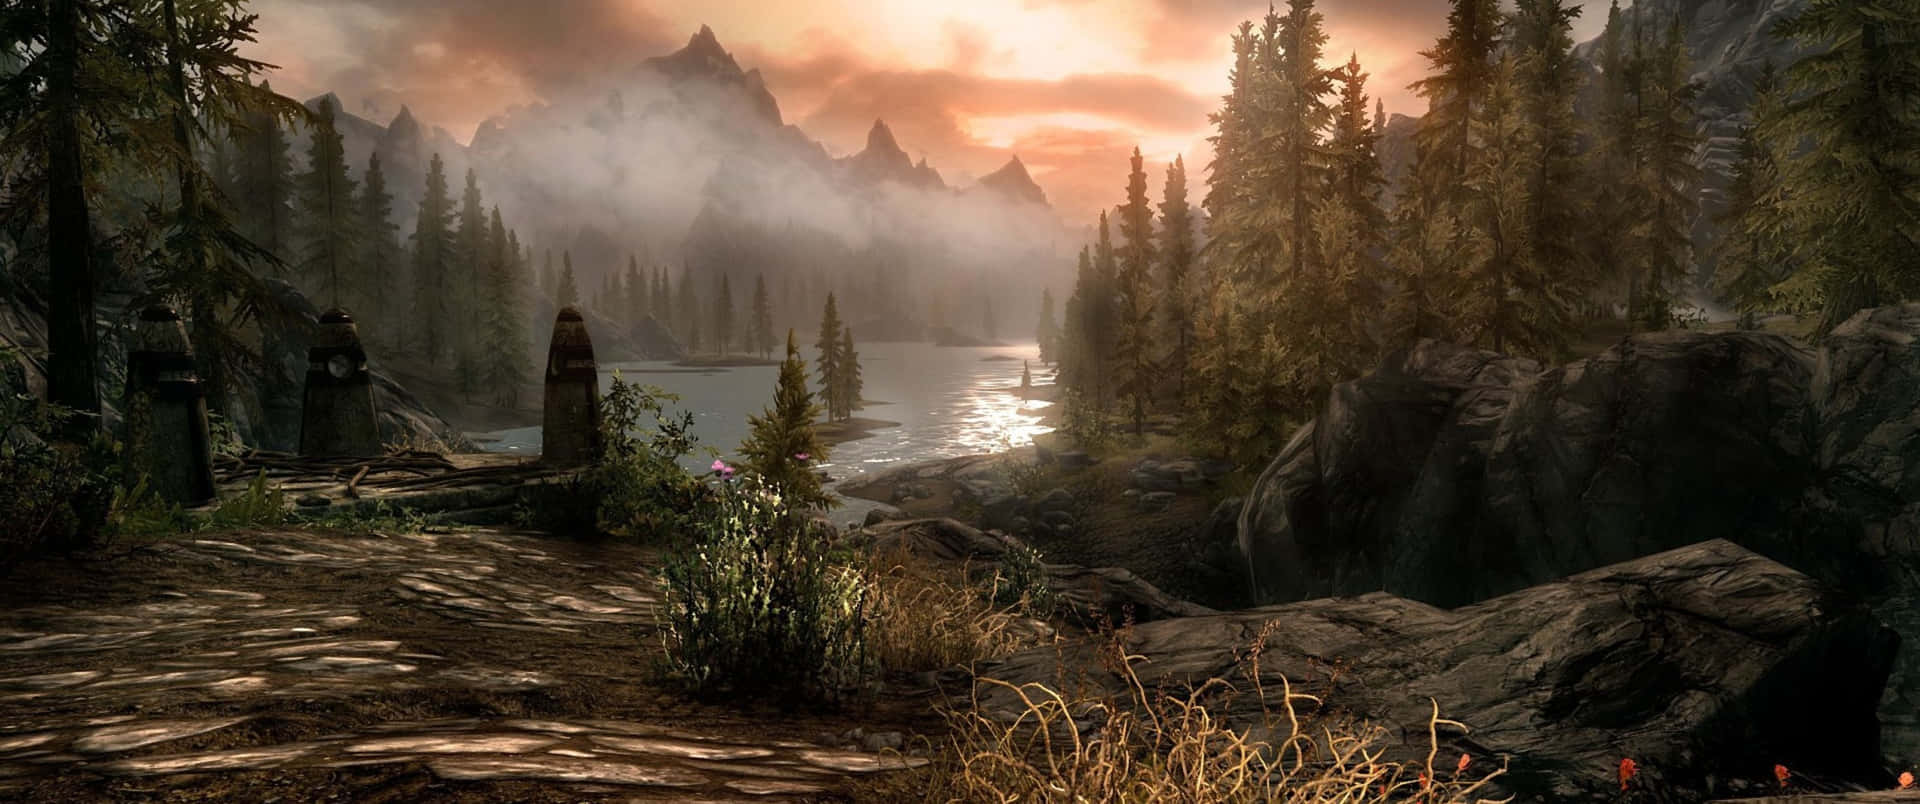 Unavista Di The Elder Scrolls V: Skyrim, Uno Dei Più Iconici Videogiochi Di Ruolo Fantasy E Avventura